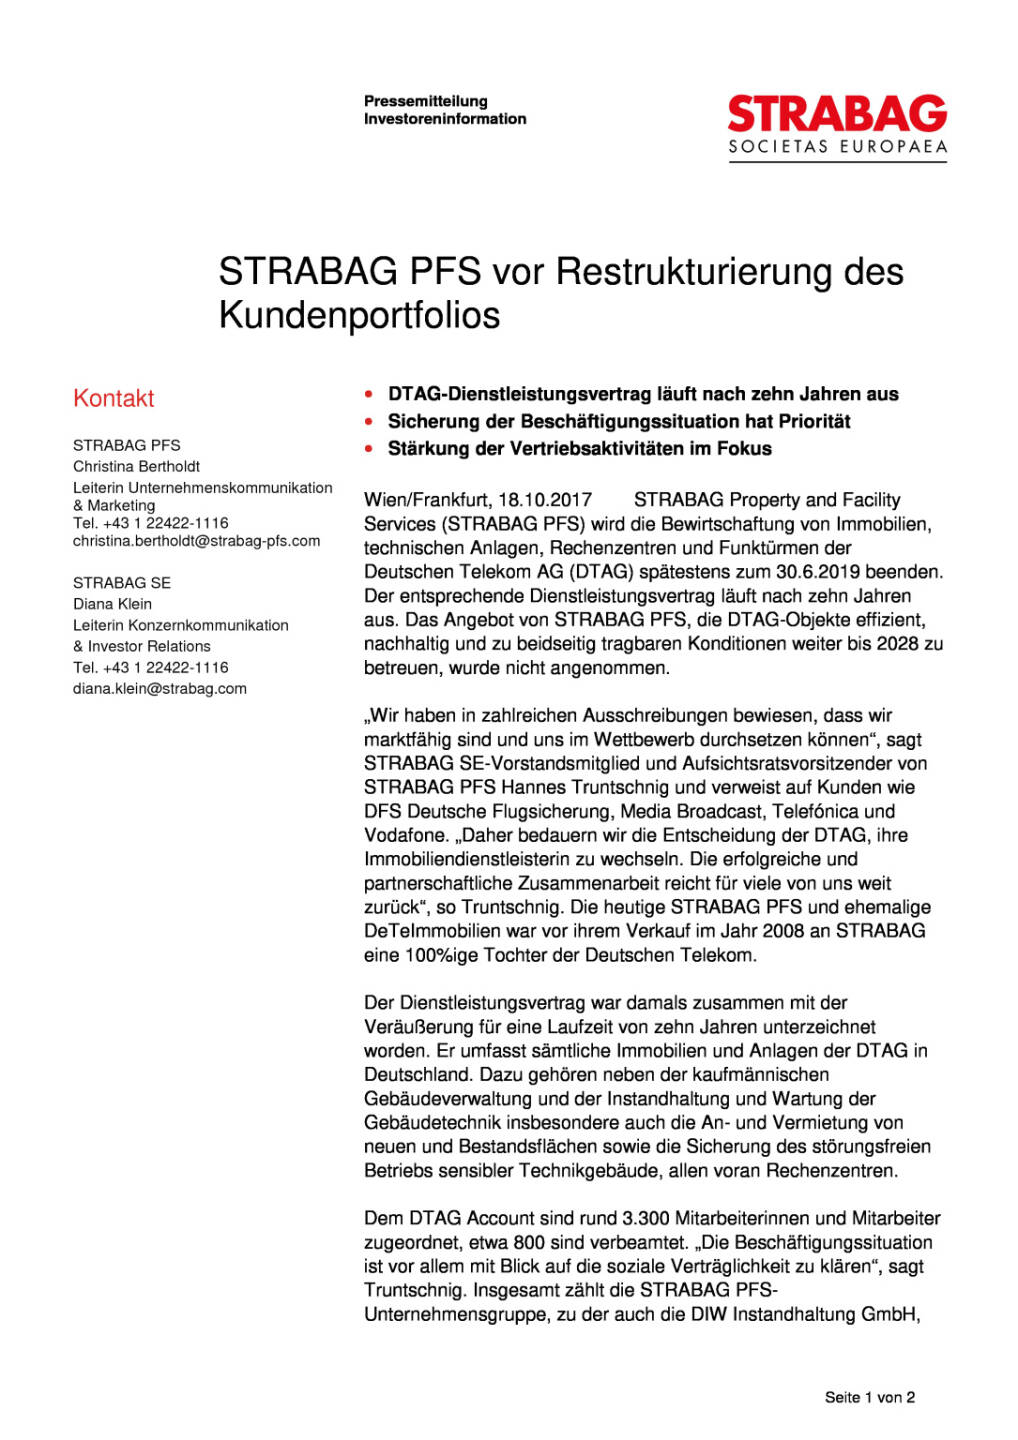 Strabag PFS vor Restrukturierung des Kundenportfolios, Seite 1/2, komplettes Dokument unter http://boerse-social.com/static/uploads/file_2369_strabag_pfs_vor_restrukturierung_des_kundenportfolios.pdf